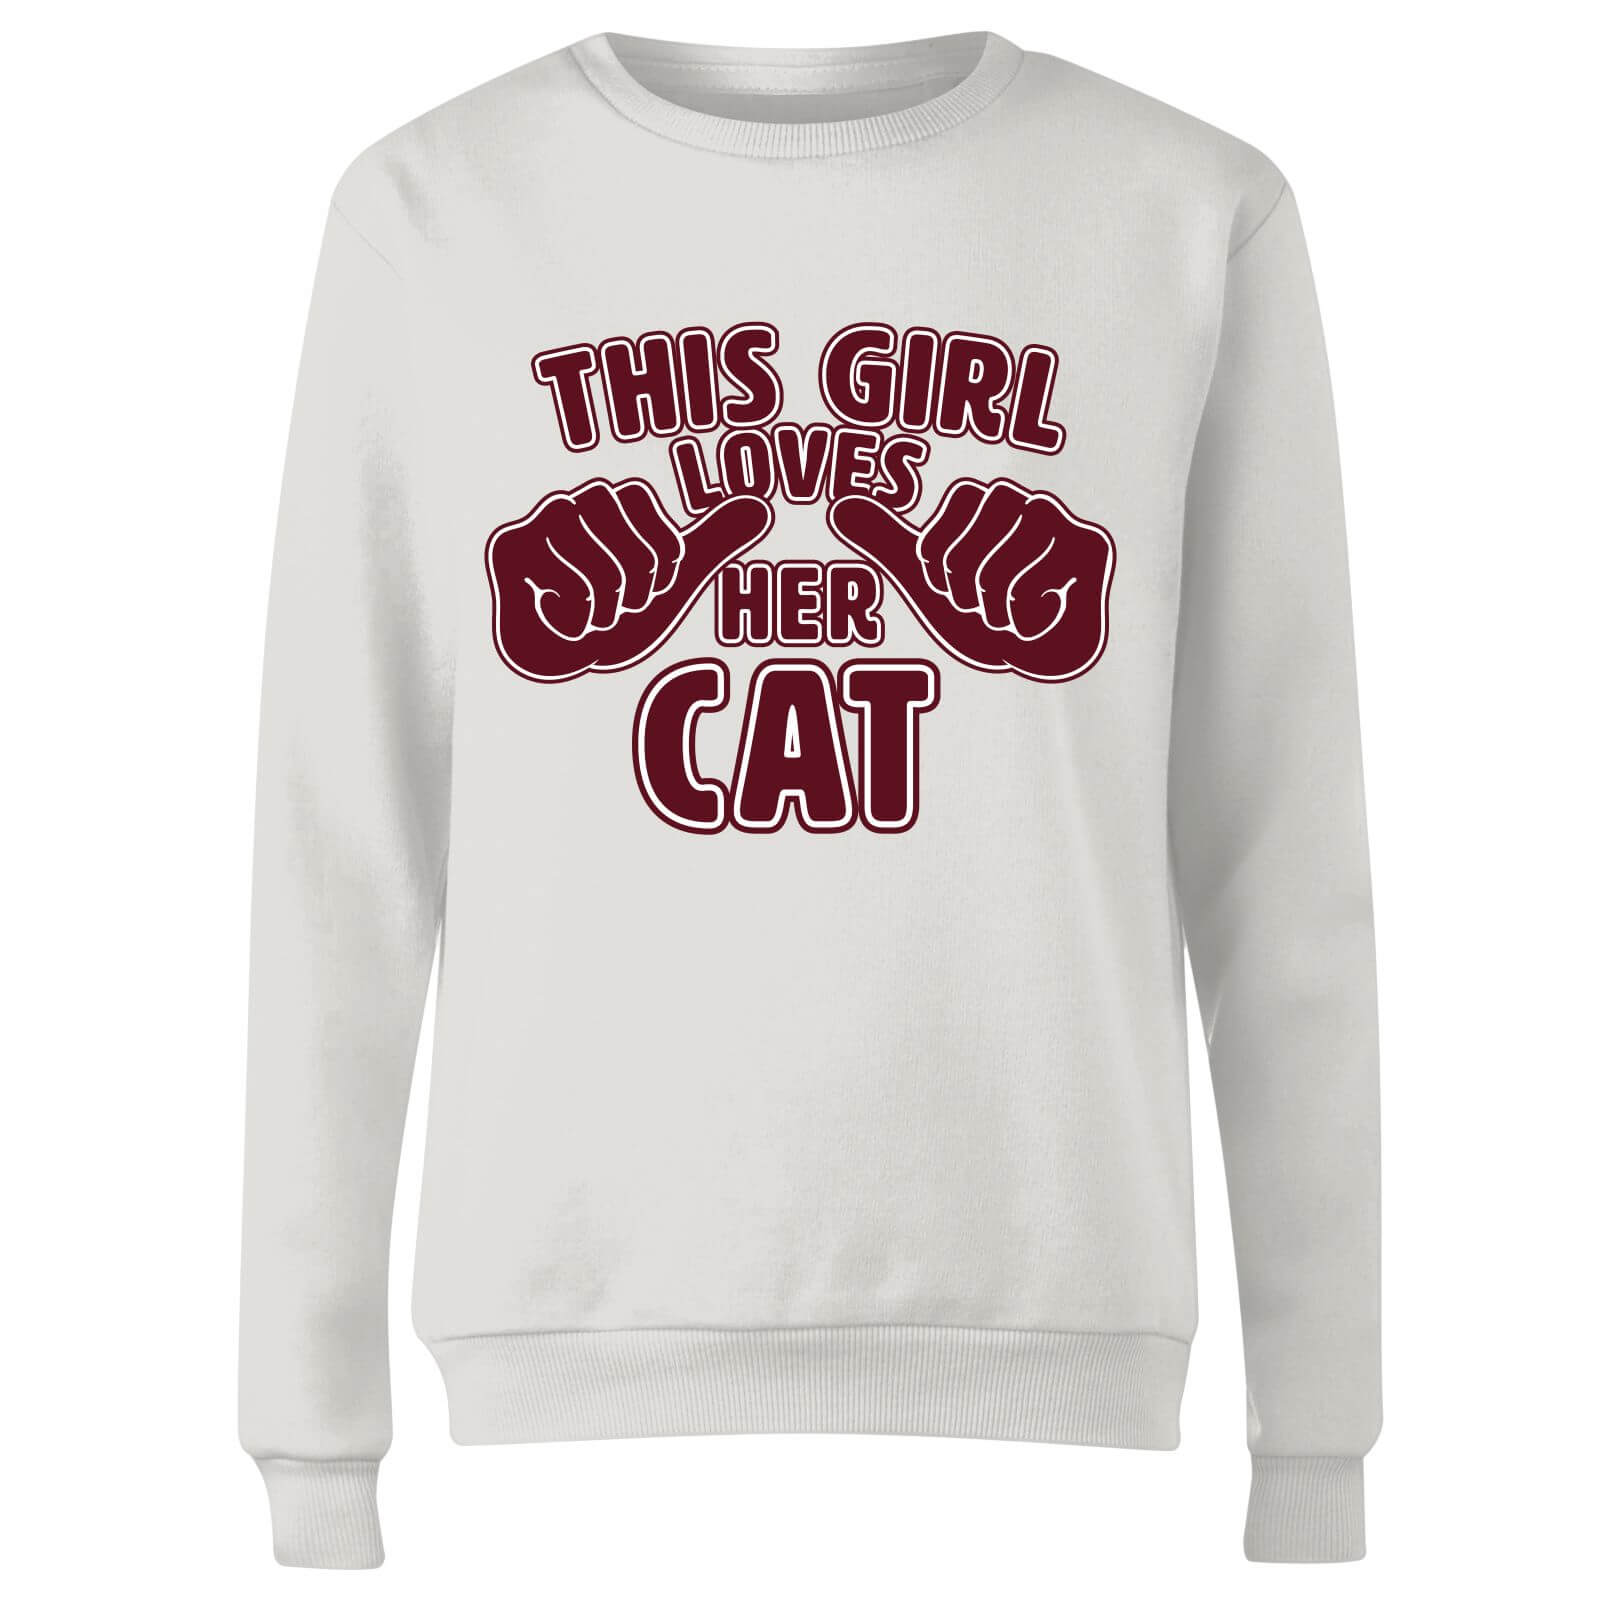 This Girl Loves Her Cat Women's Sweatshirt - White - XXL - White